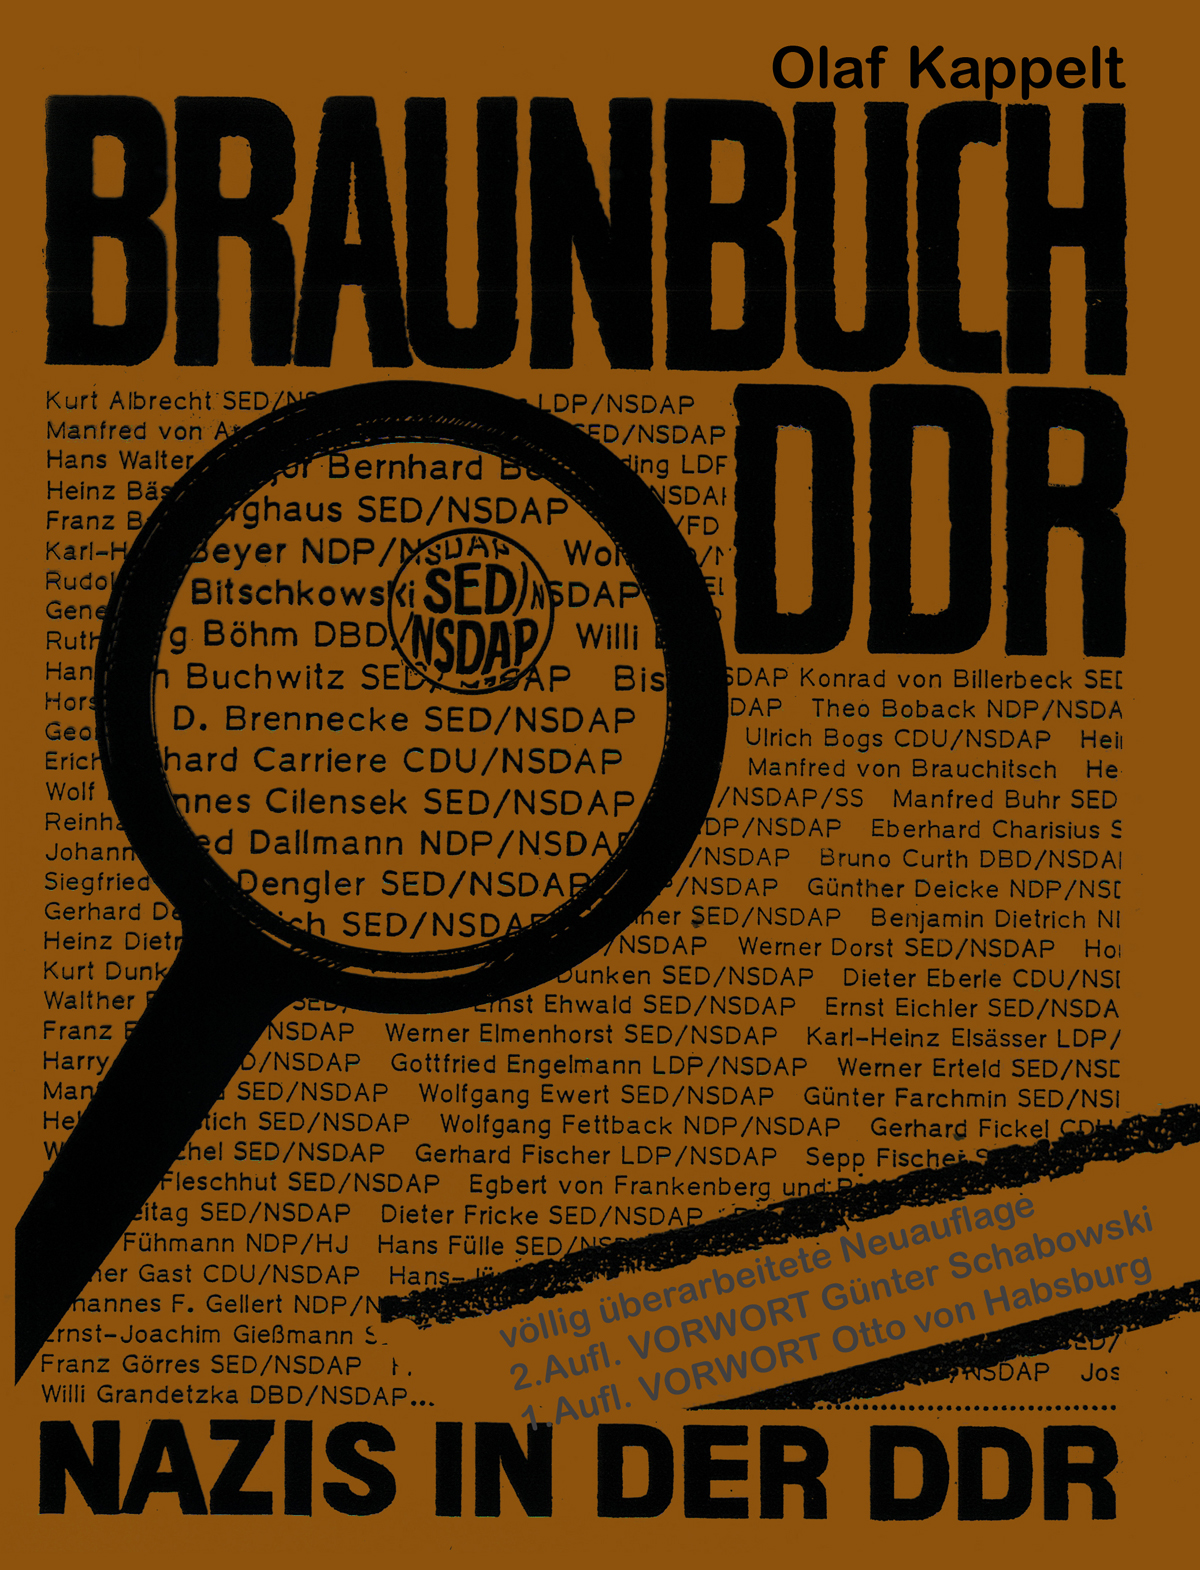 Braunbuch DDR - Nazis in der DDR